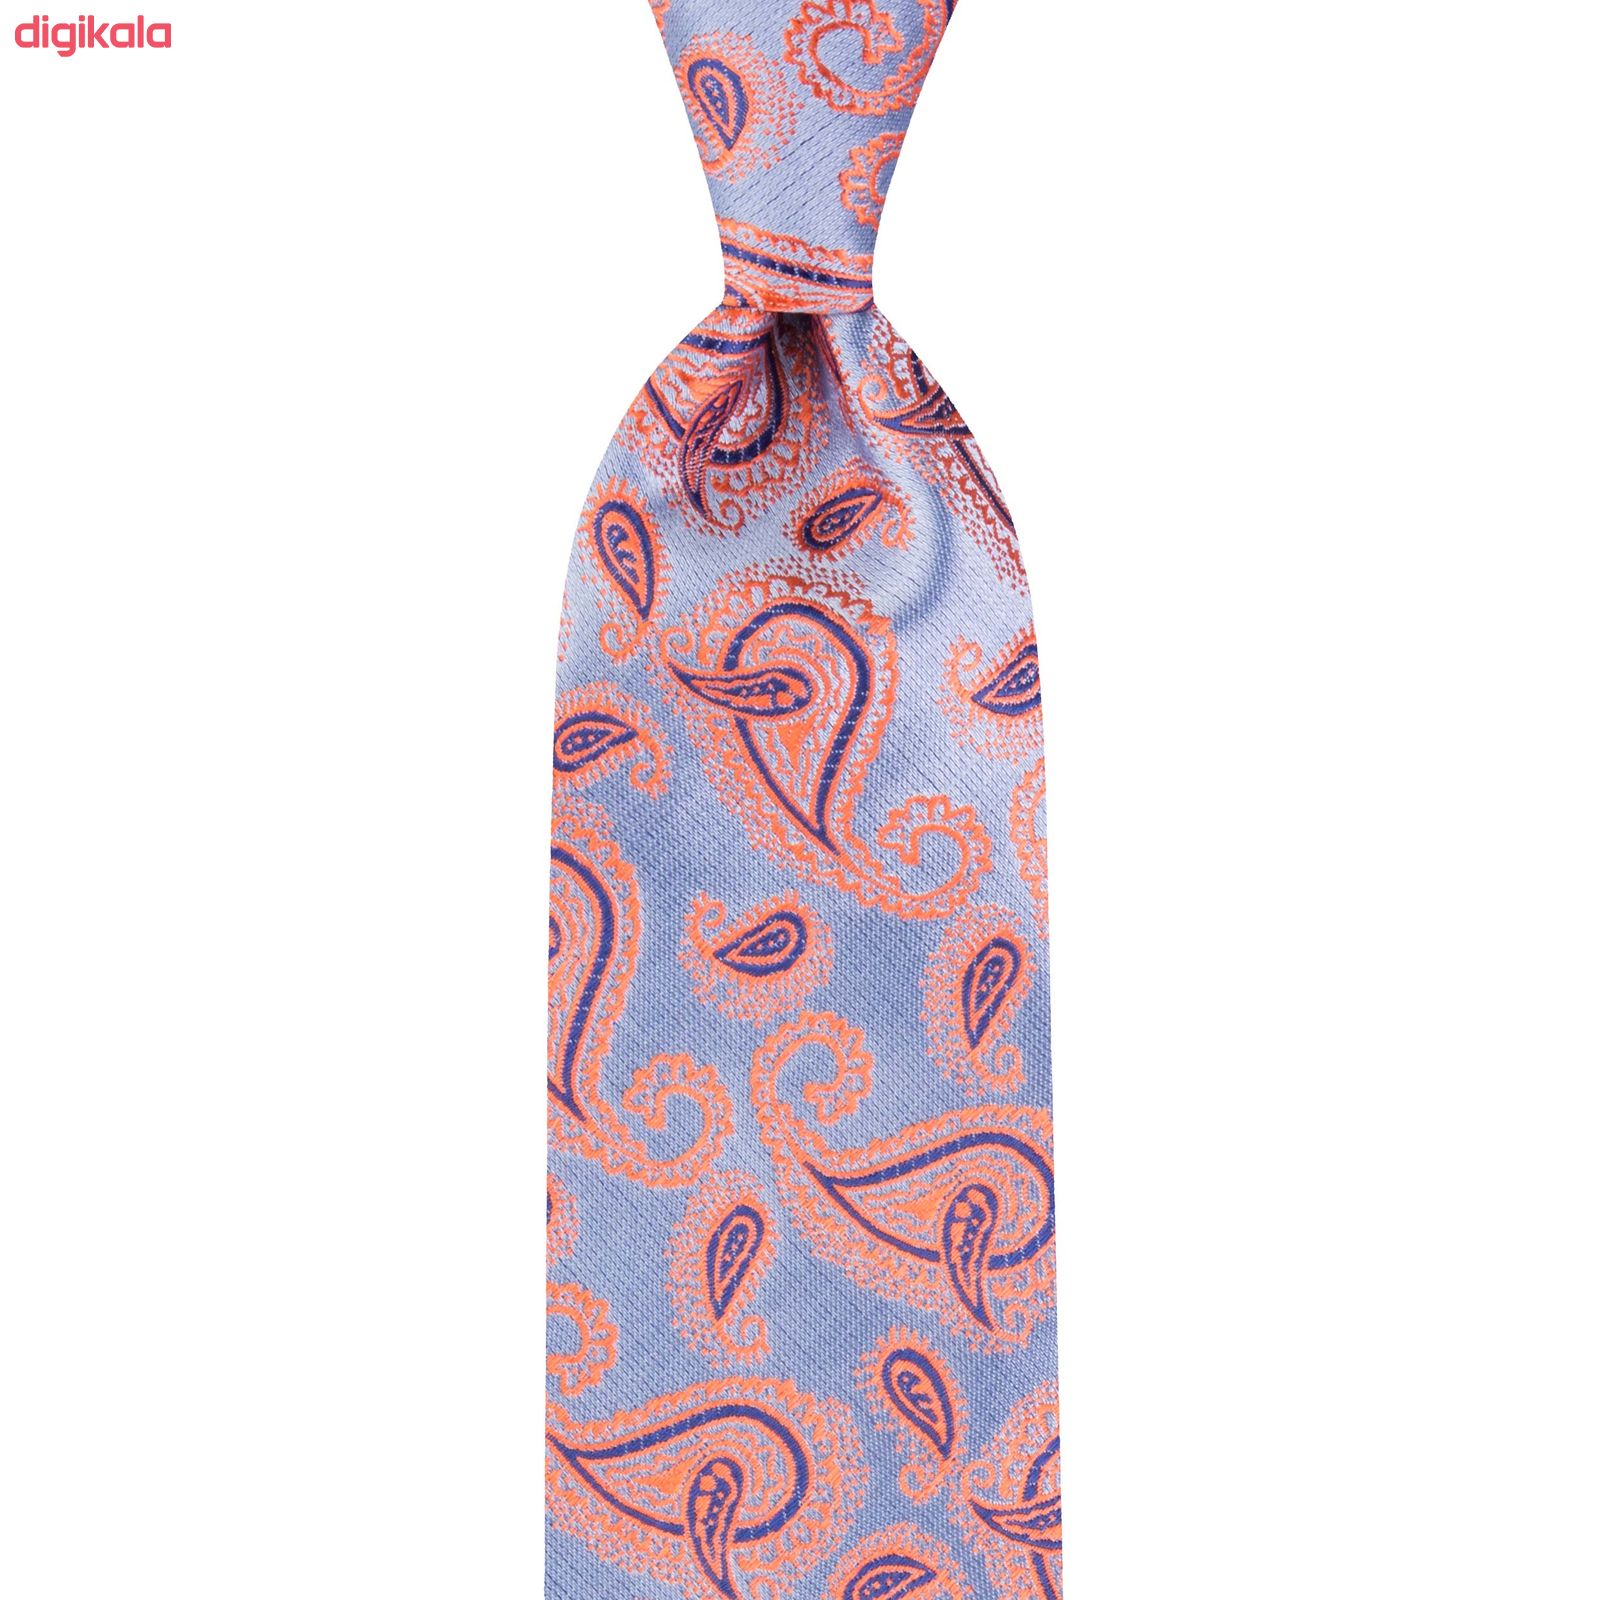  خرید اینترنتی با تخفیف ویژه ست کراوات و دستمال جیب مردانه مدل GF-PA1252-OR